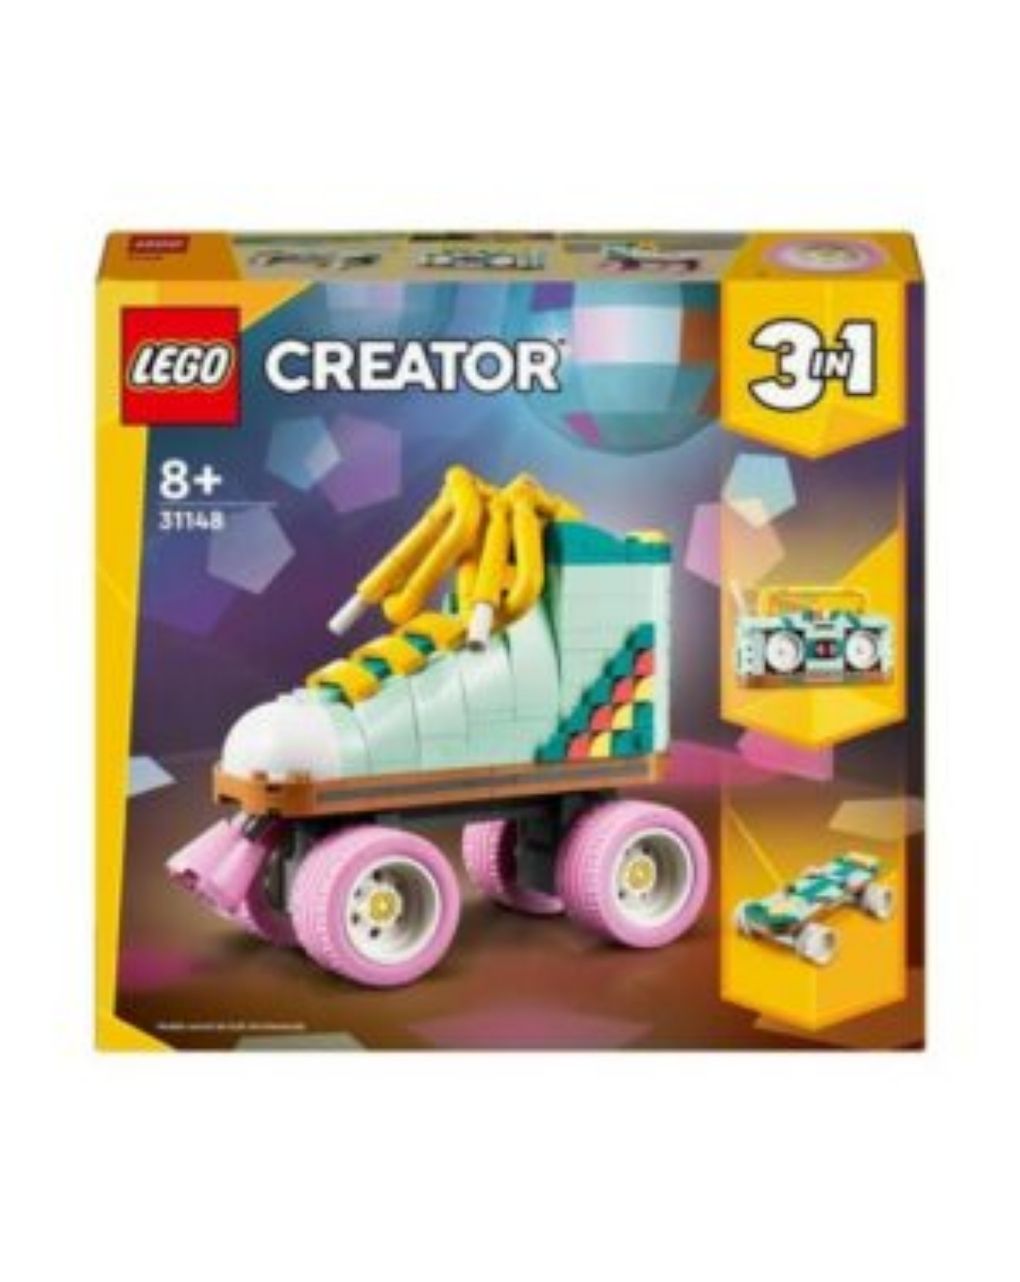 Lego creator retro roller skate για 8+ ετών 31148 - Lego